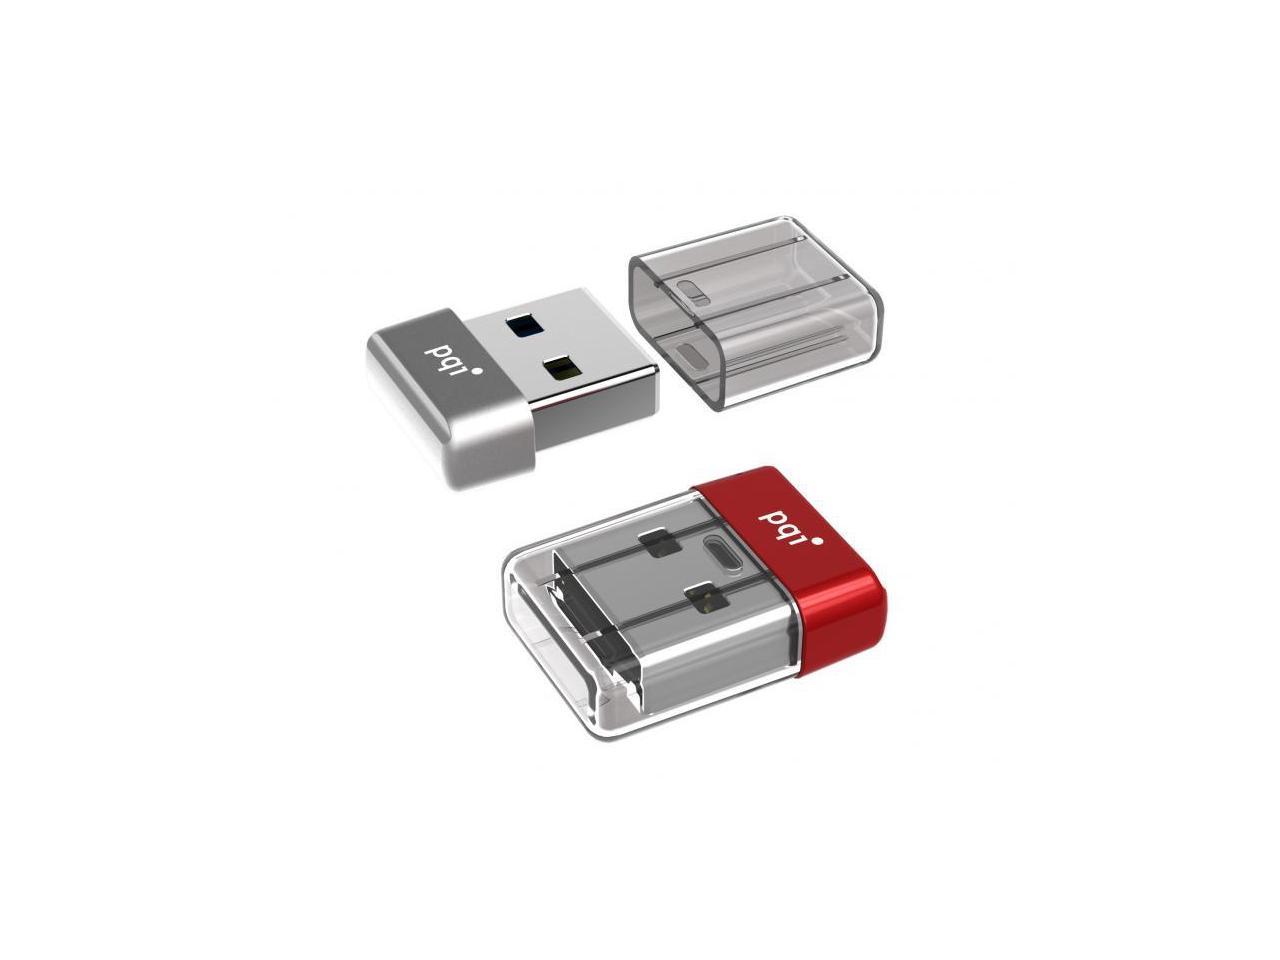 32GB PQI U603V USB3.0 Ultra-small Flash Drive Red Edition